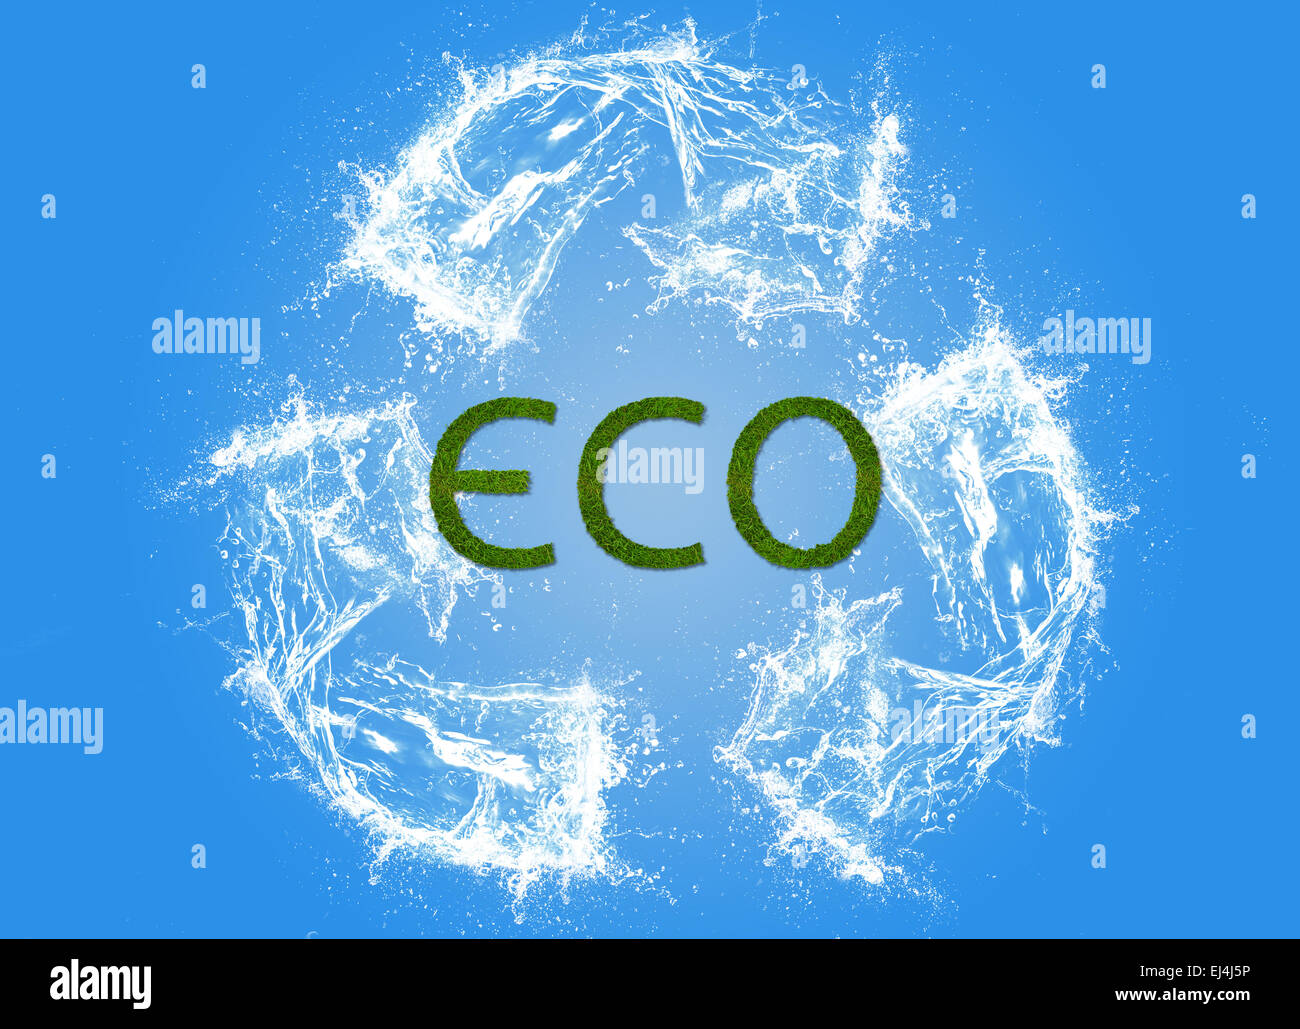 Segno eco, inquinamento, ecologico, eco friendly, arte digitale Foto Stock